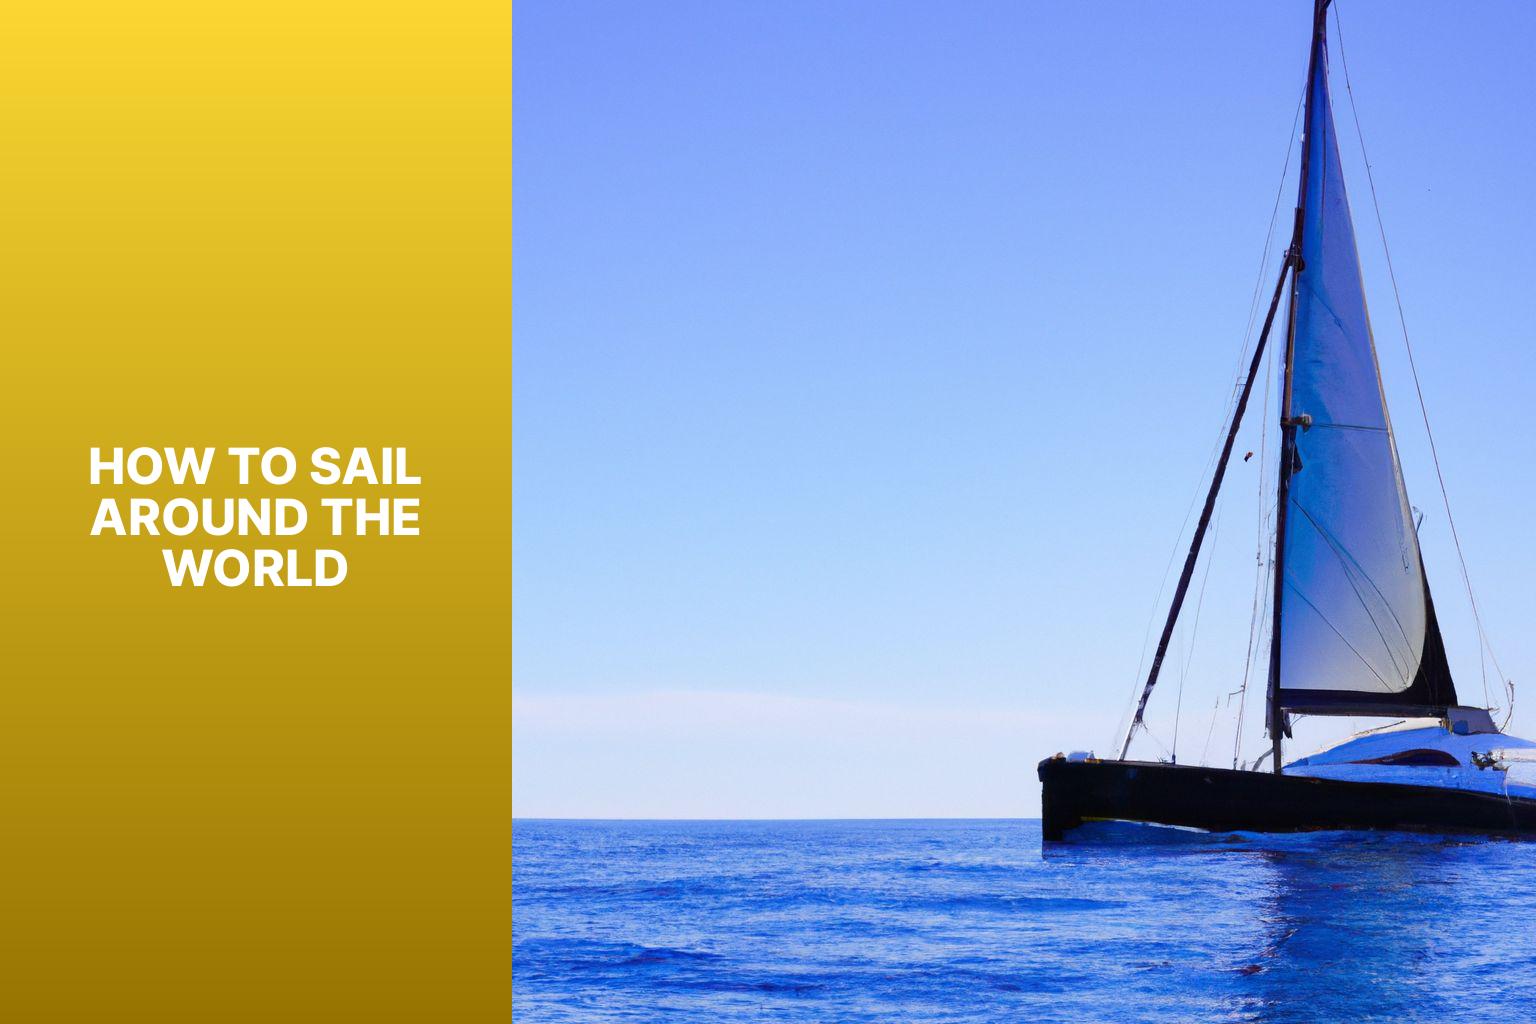 sailboat to sail around the world